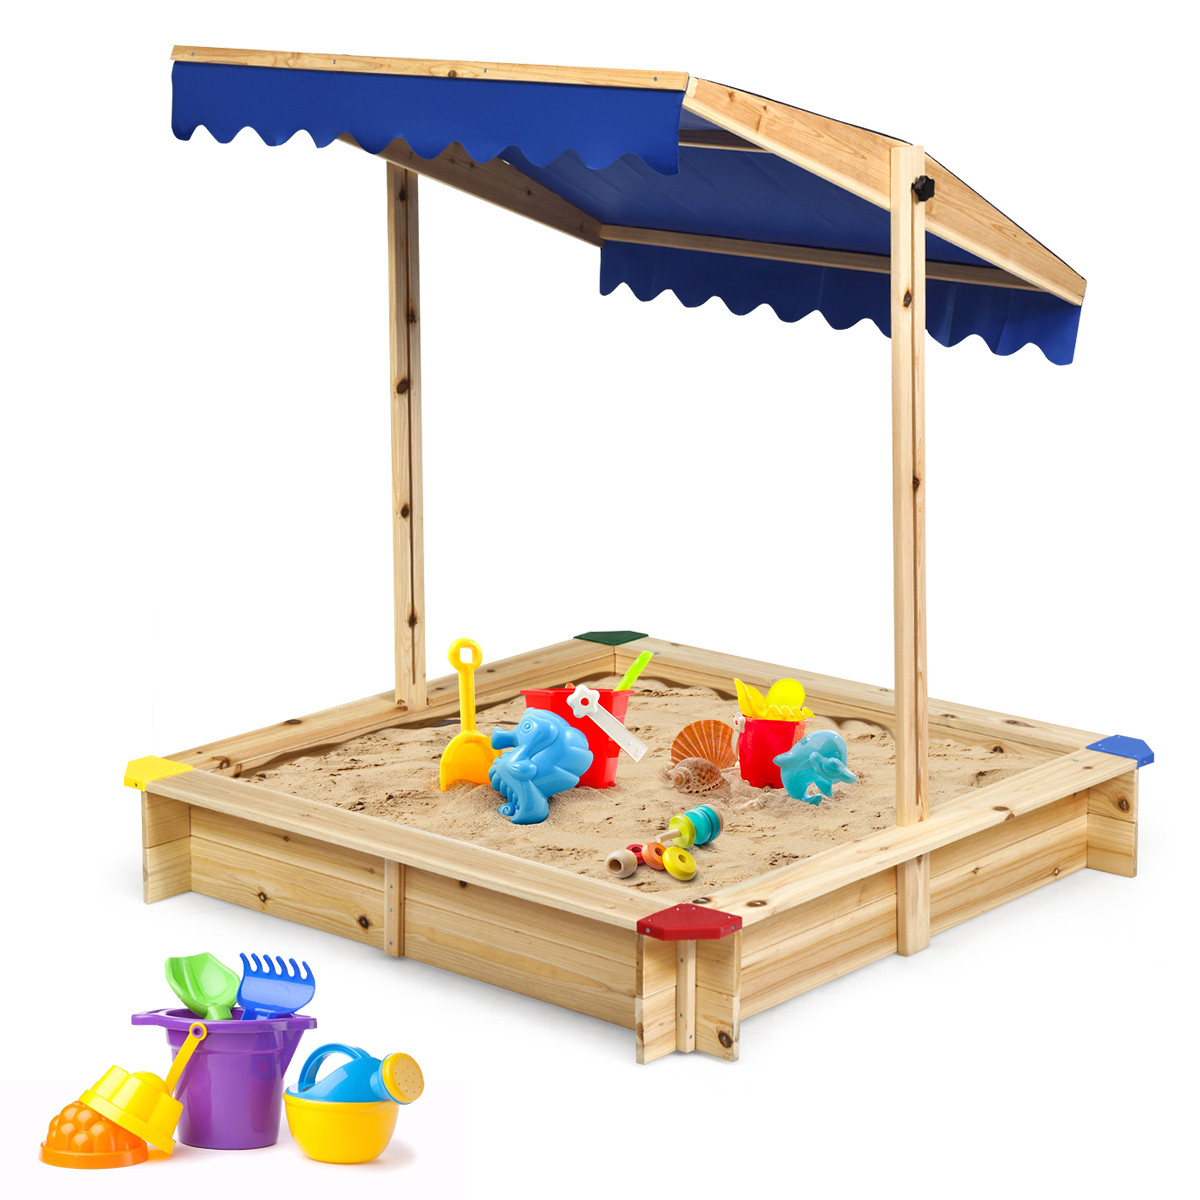 Walmart Backyard Playsets
 Costway Kids Wooden Sandbox Children Outdoor Playset w